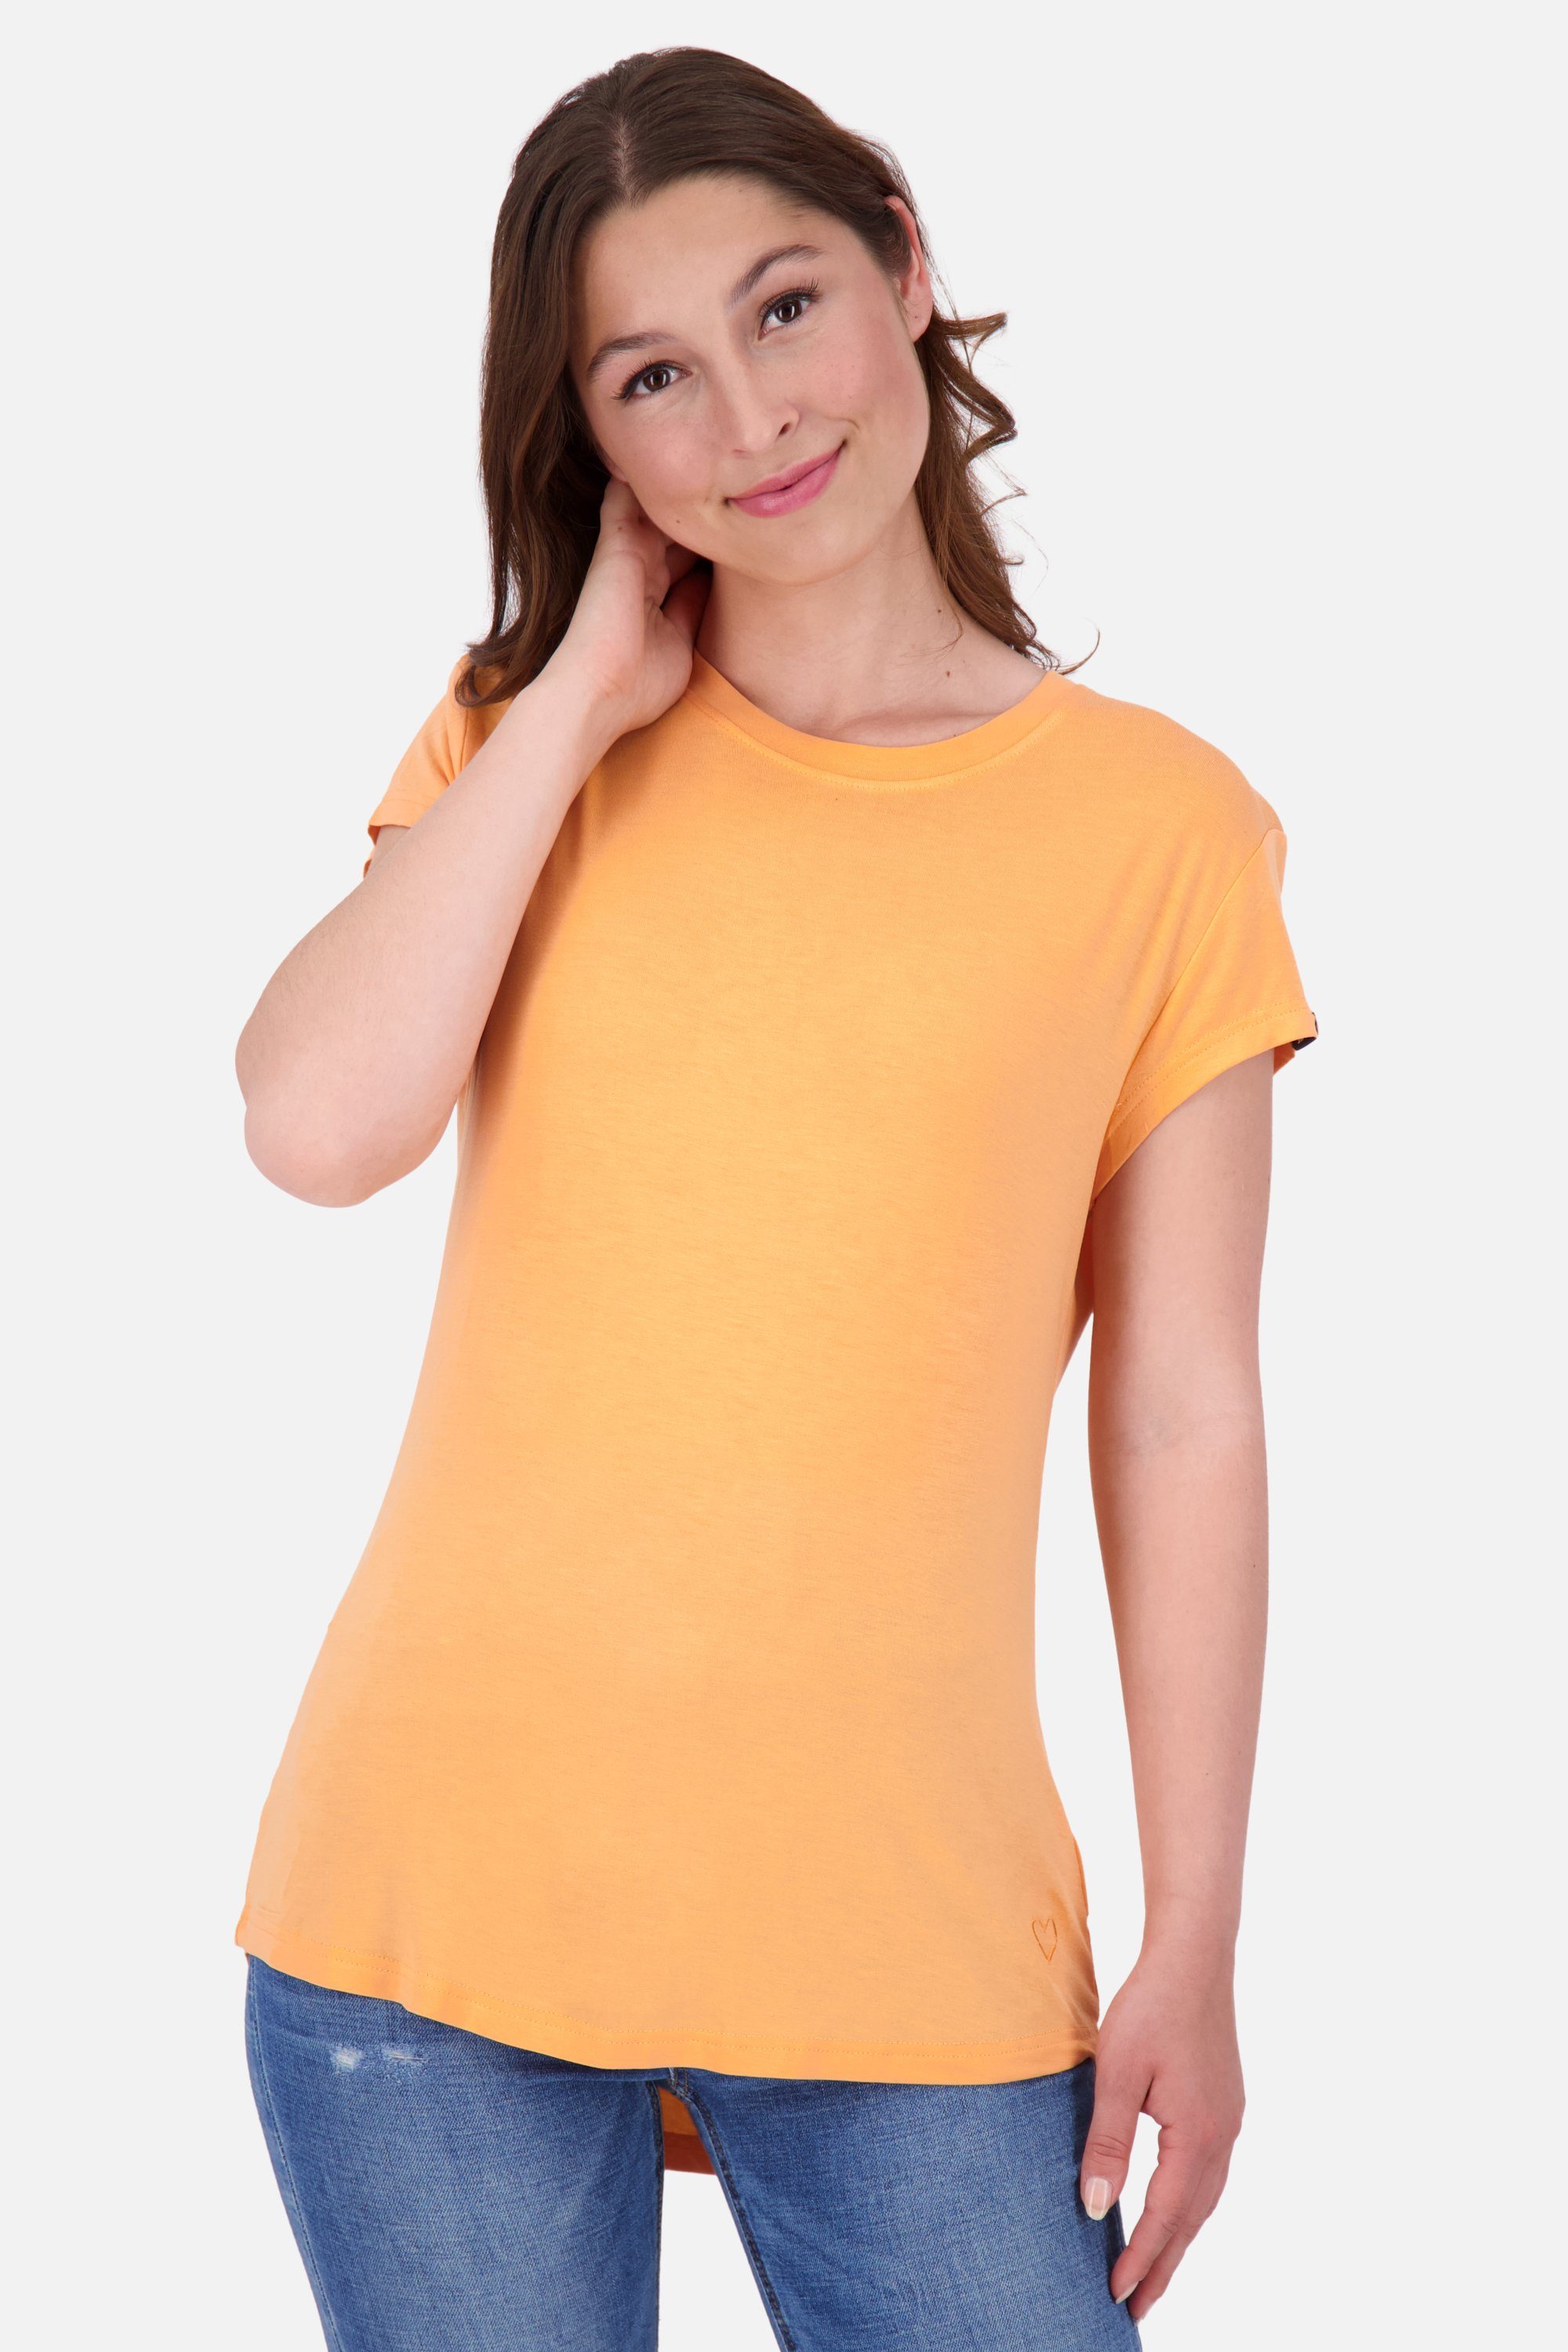 Shirt A Shirt tangerine MimmyAK Alife & Kickin Kurzarmshirt, Damen Rundhalsshirt